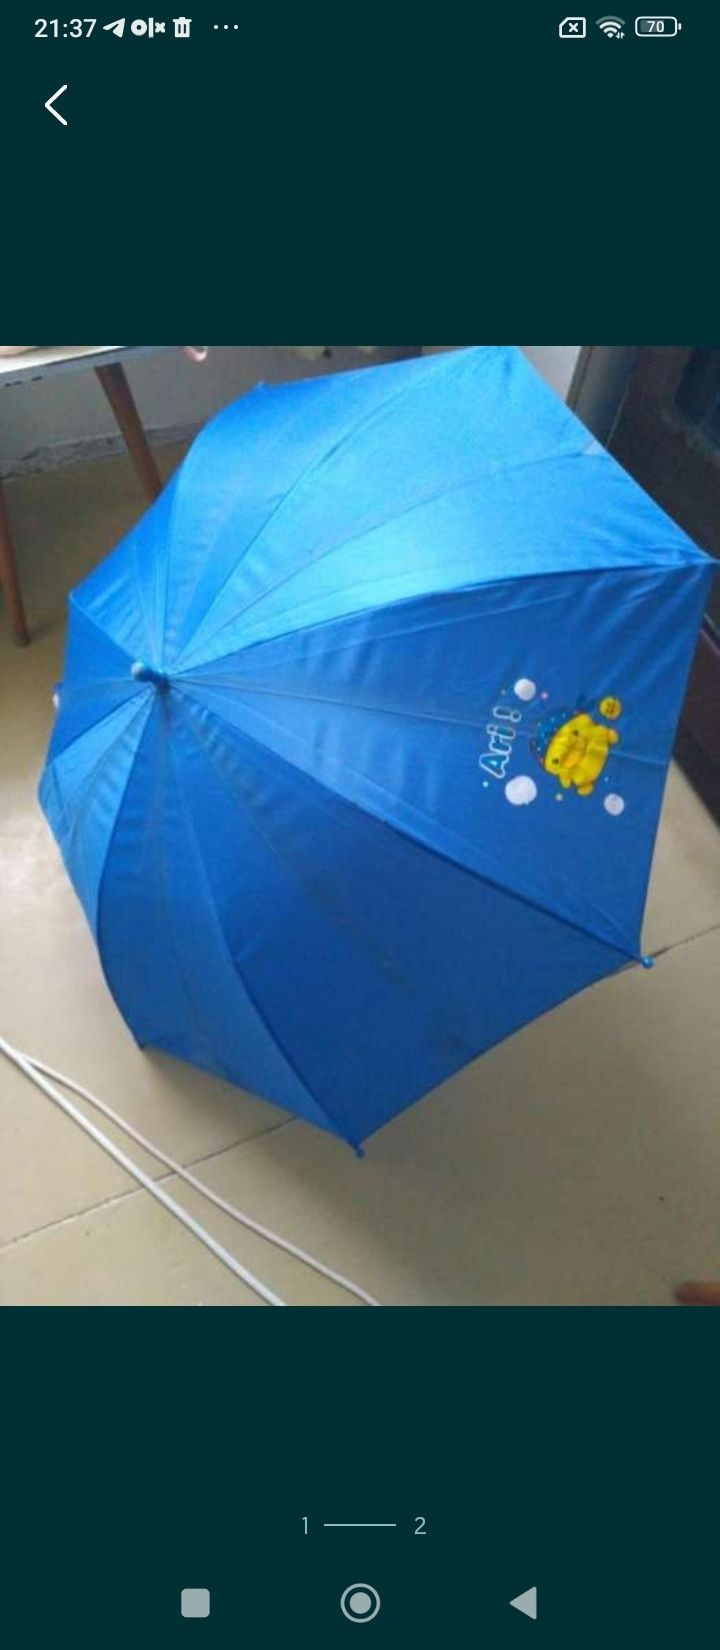 Детский большой зонт